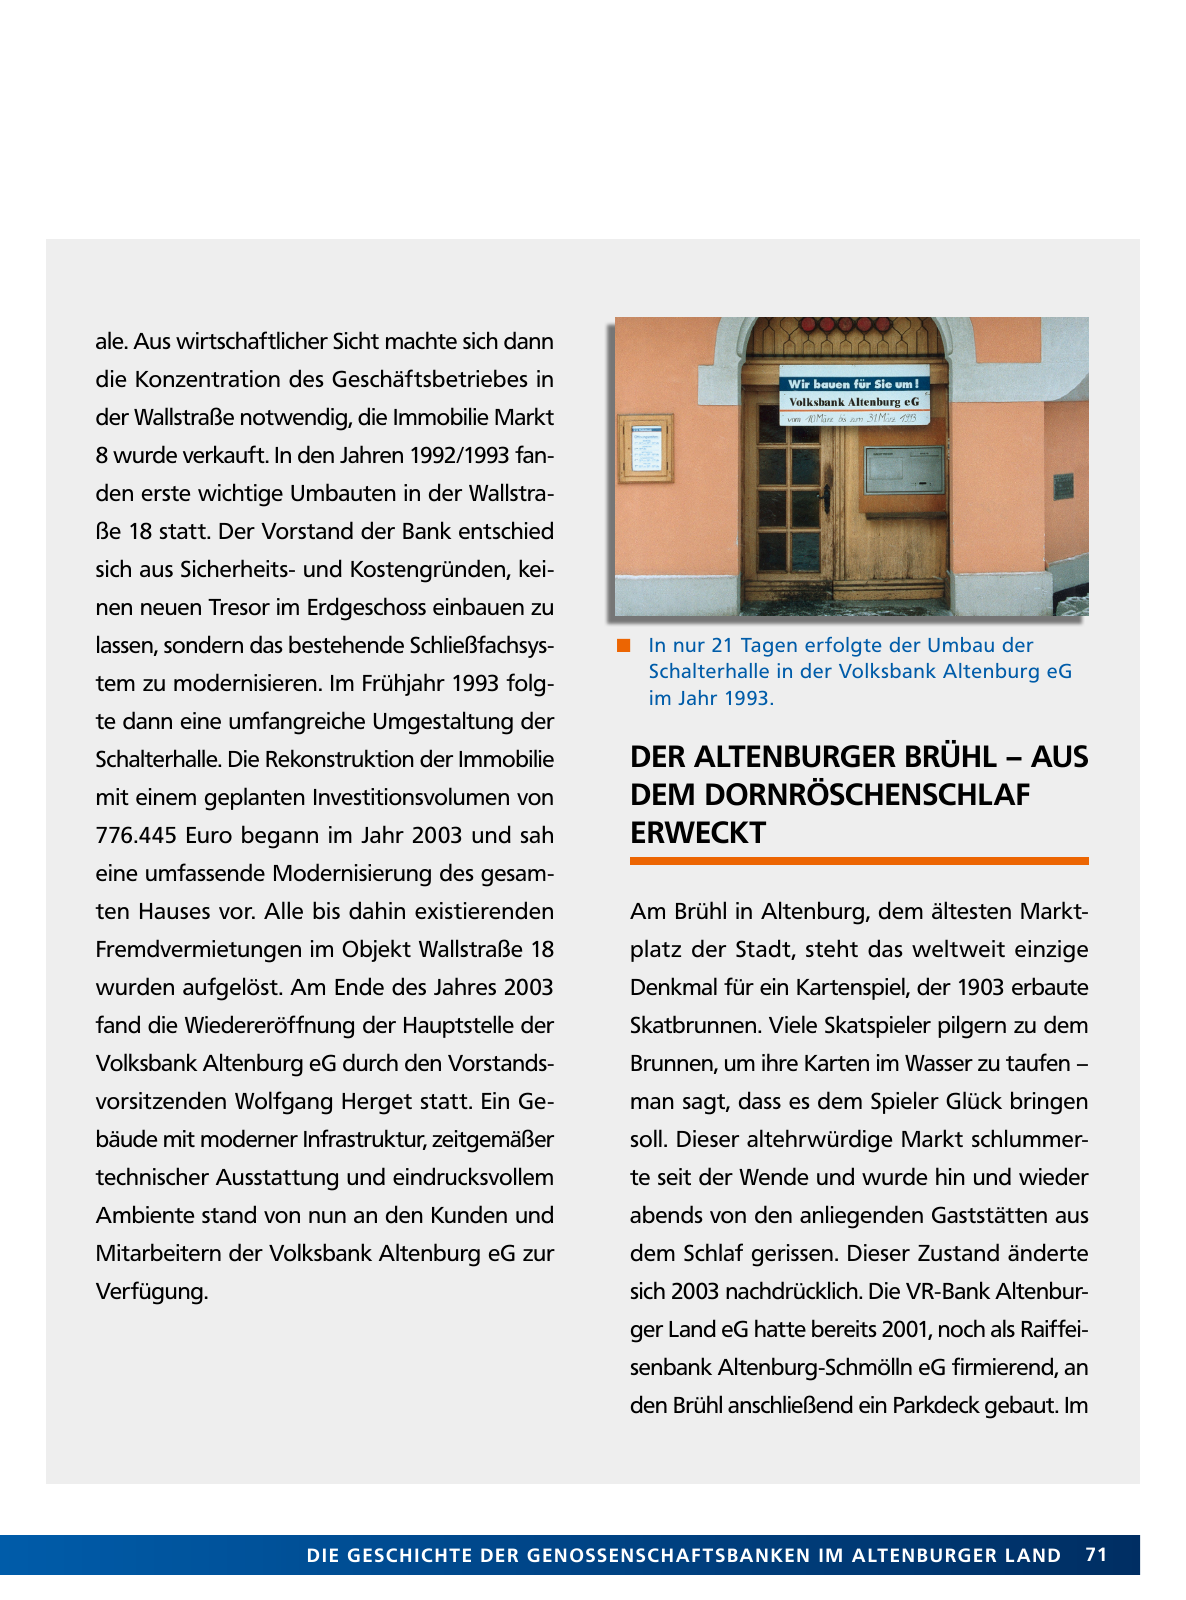 Vorschau Von der Idee, sich selbst zu helfen – 150 Jahre genossenschaftliches Bankwesen im Altenburger Land Seite 71